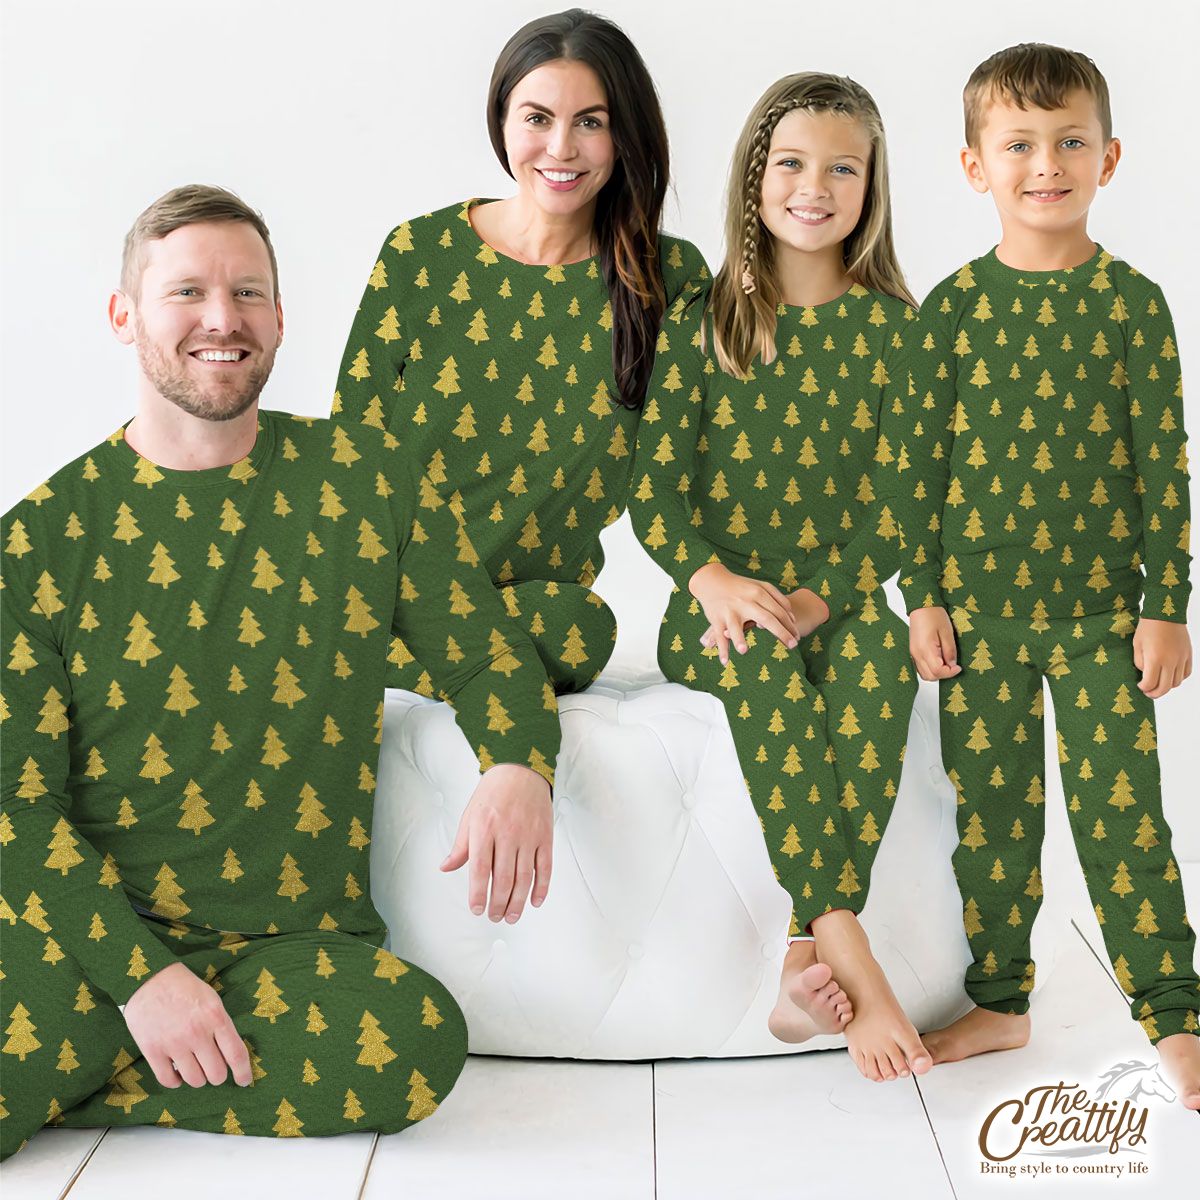 Christmas Tree, Christmas Tree Decorations, Pine Tree Pattern On Green Pajamas